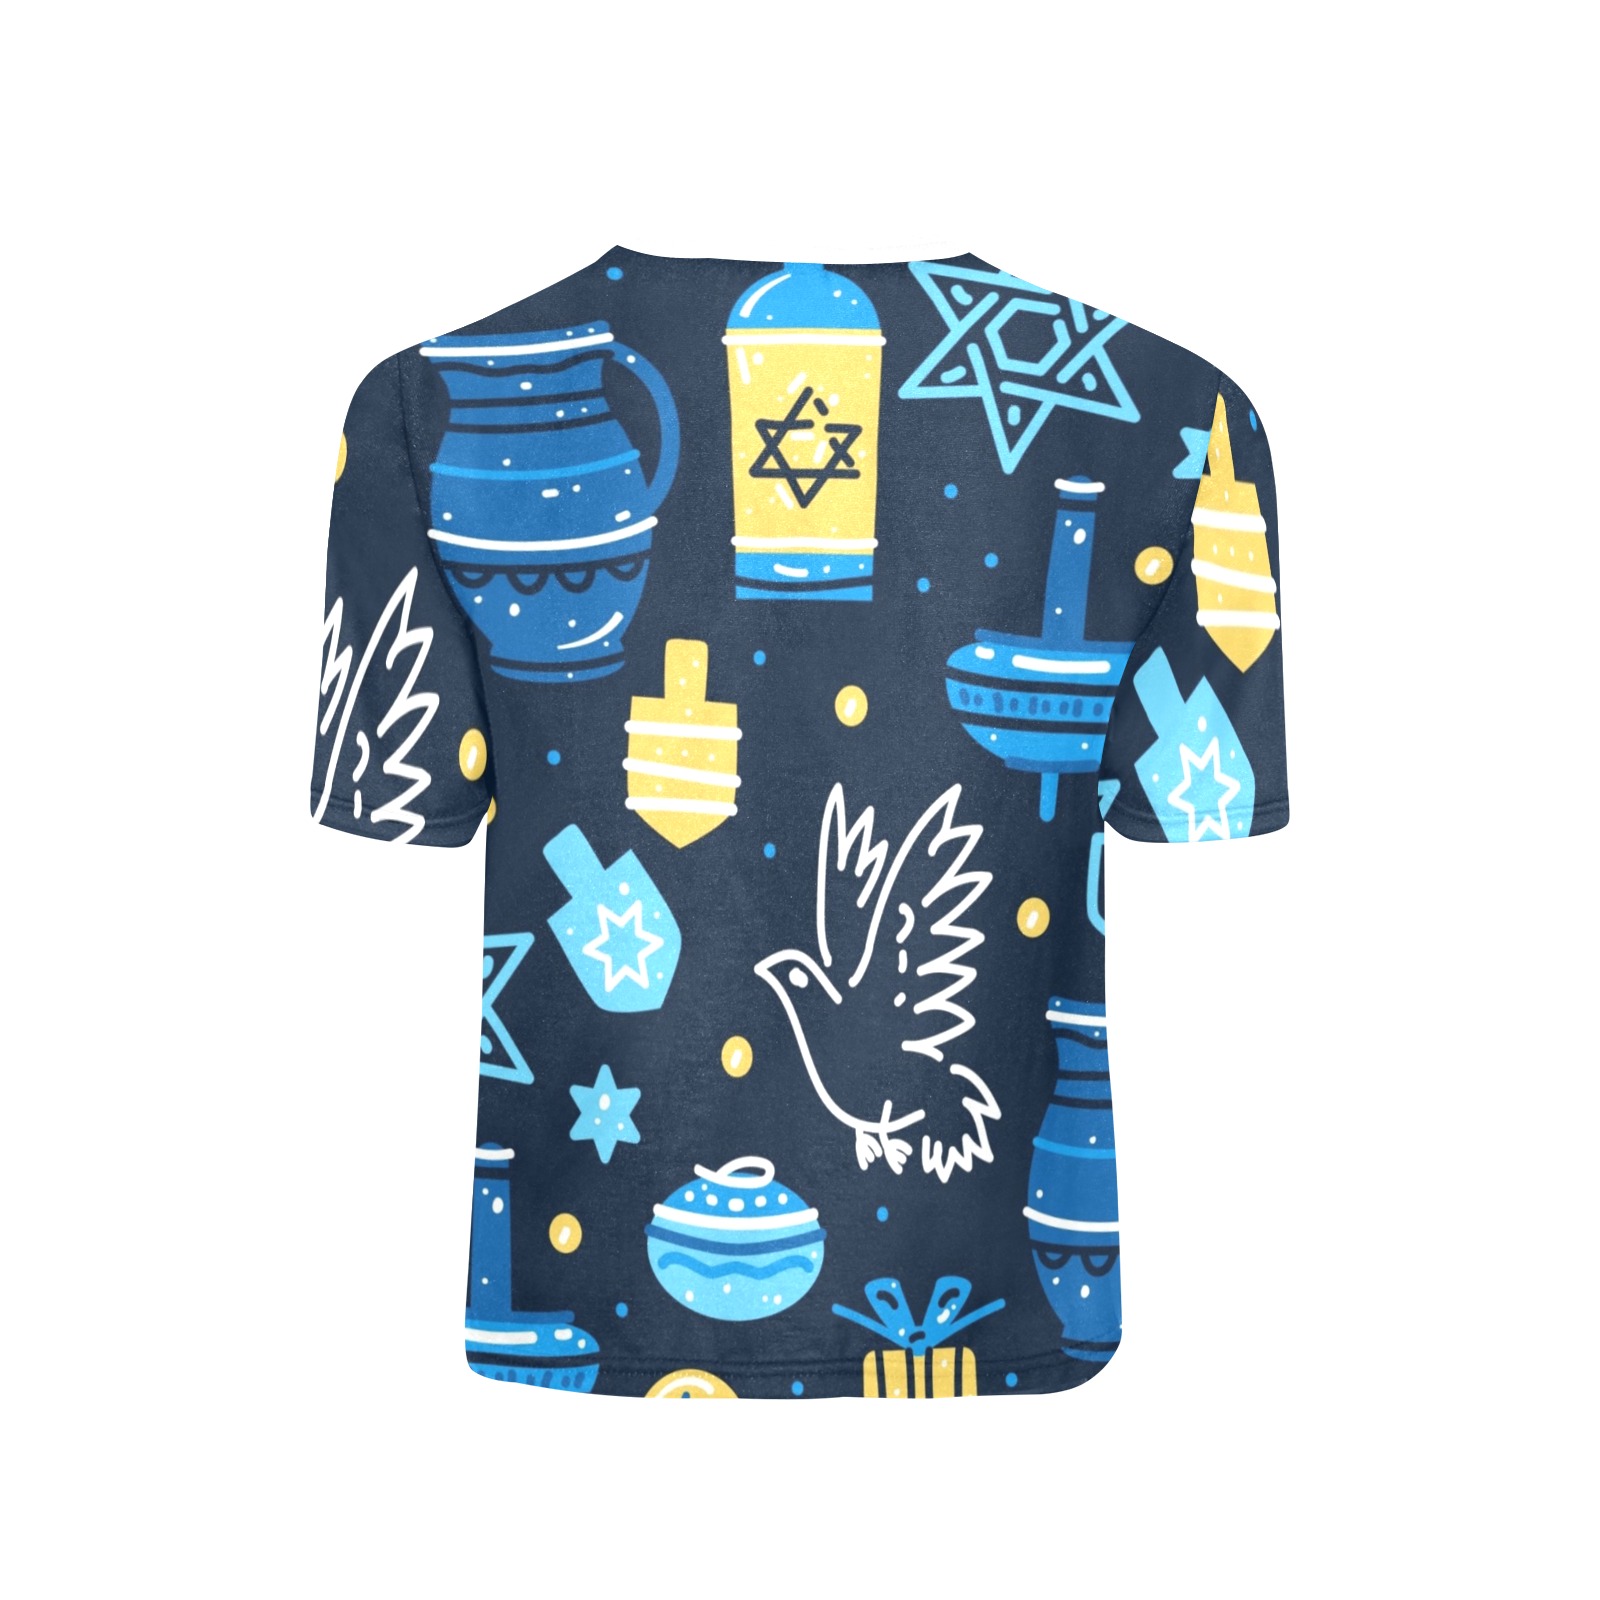 Hanukkah Tee 1 Little Girls' All Over Print Crew Neck T-Shirt (Model T40-2)